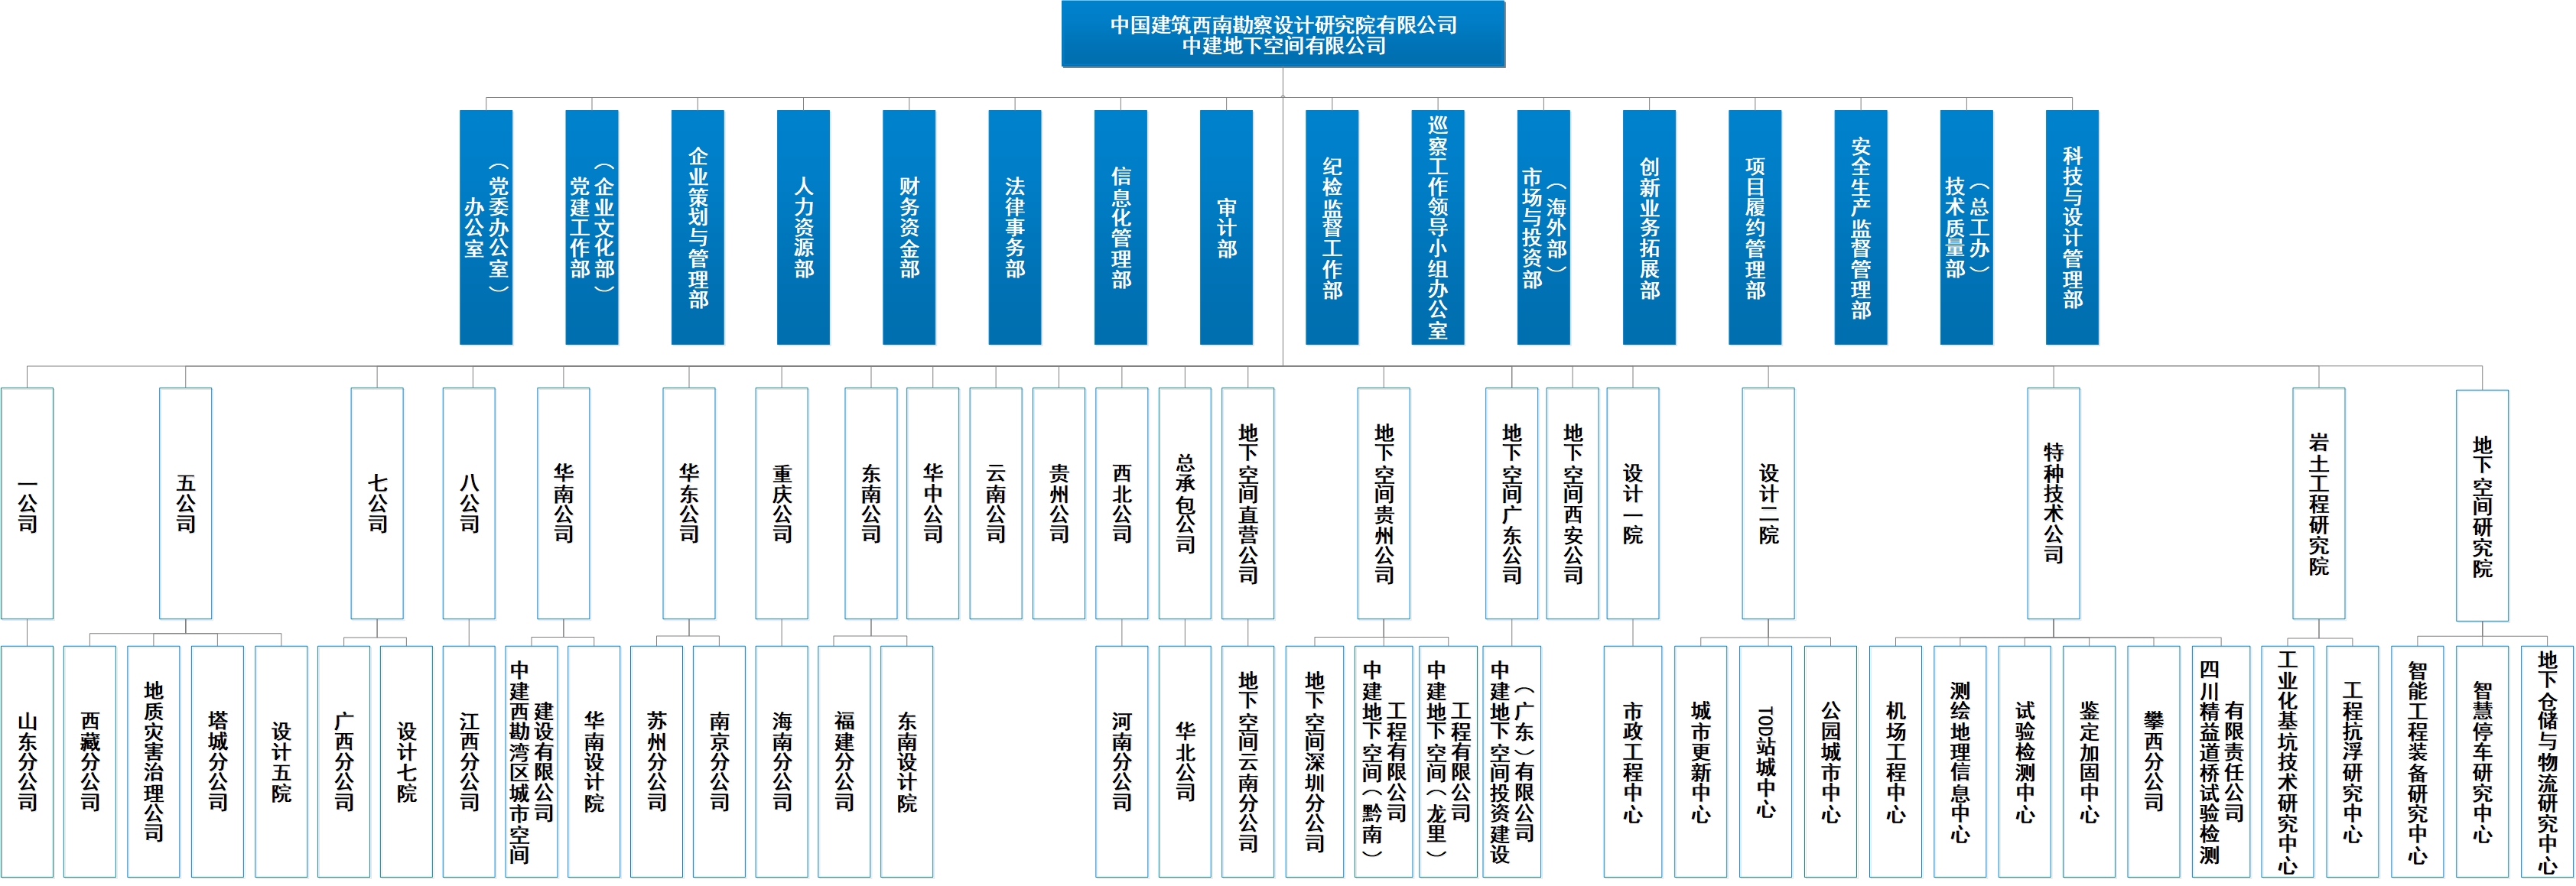 中建西勘院组织机构图（2021年11月版）.jpg